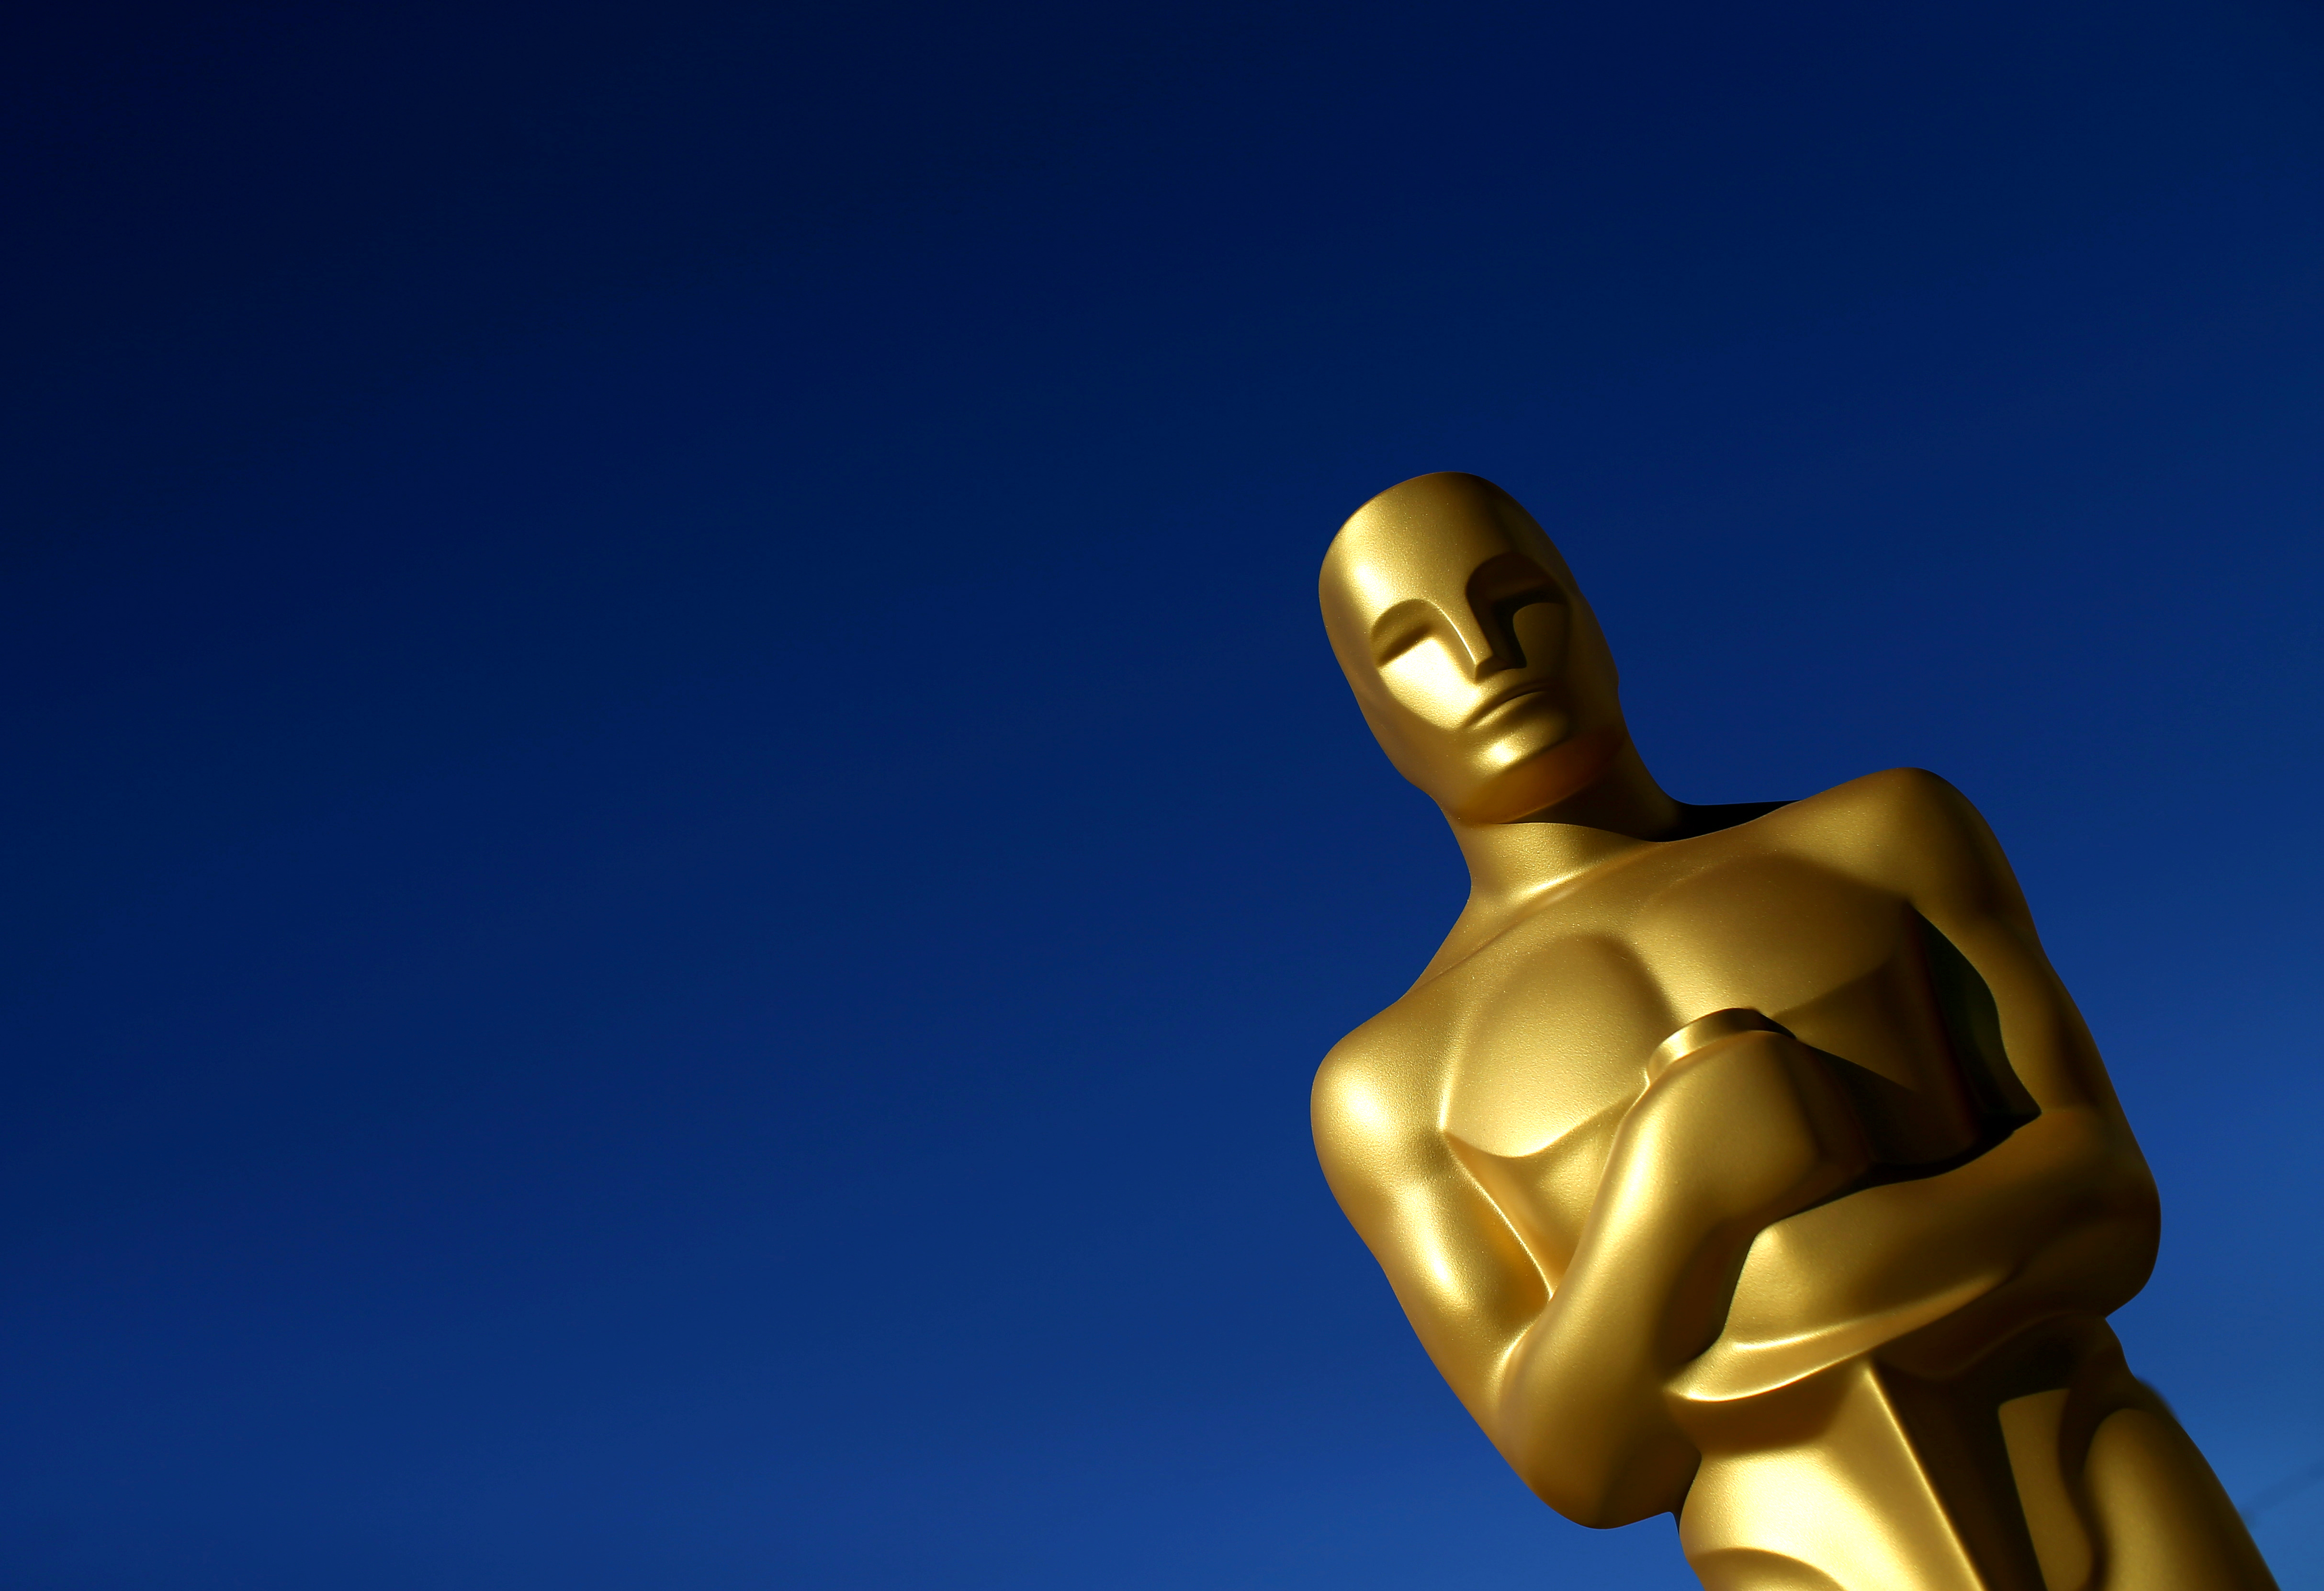 An Oscar statue.